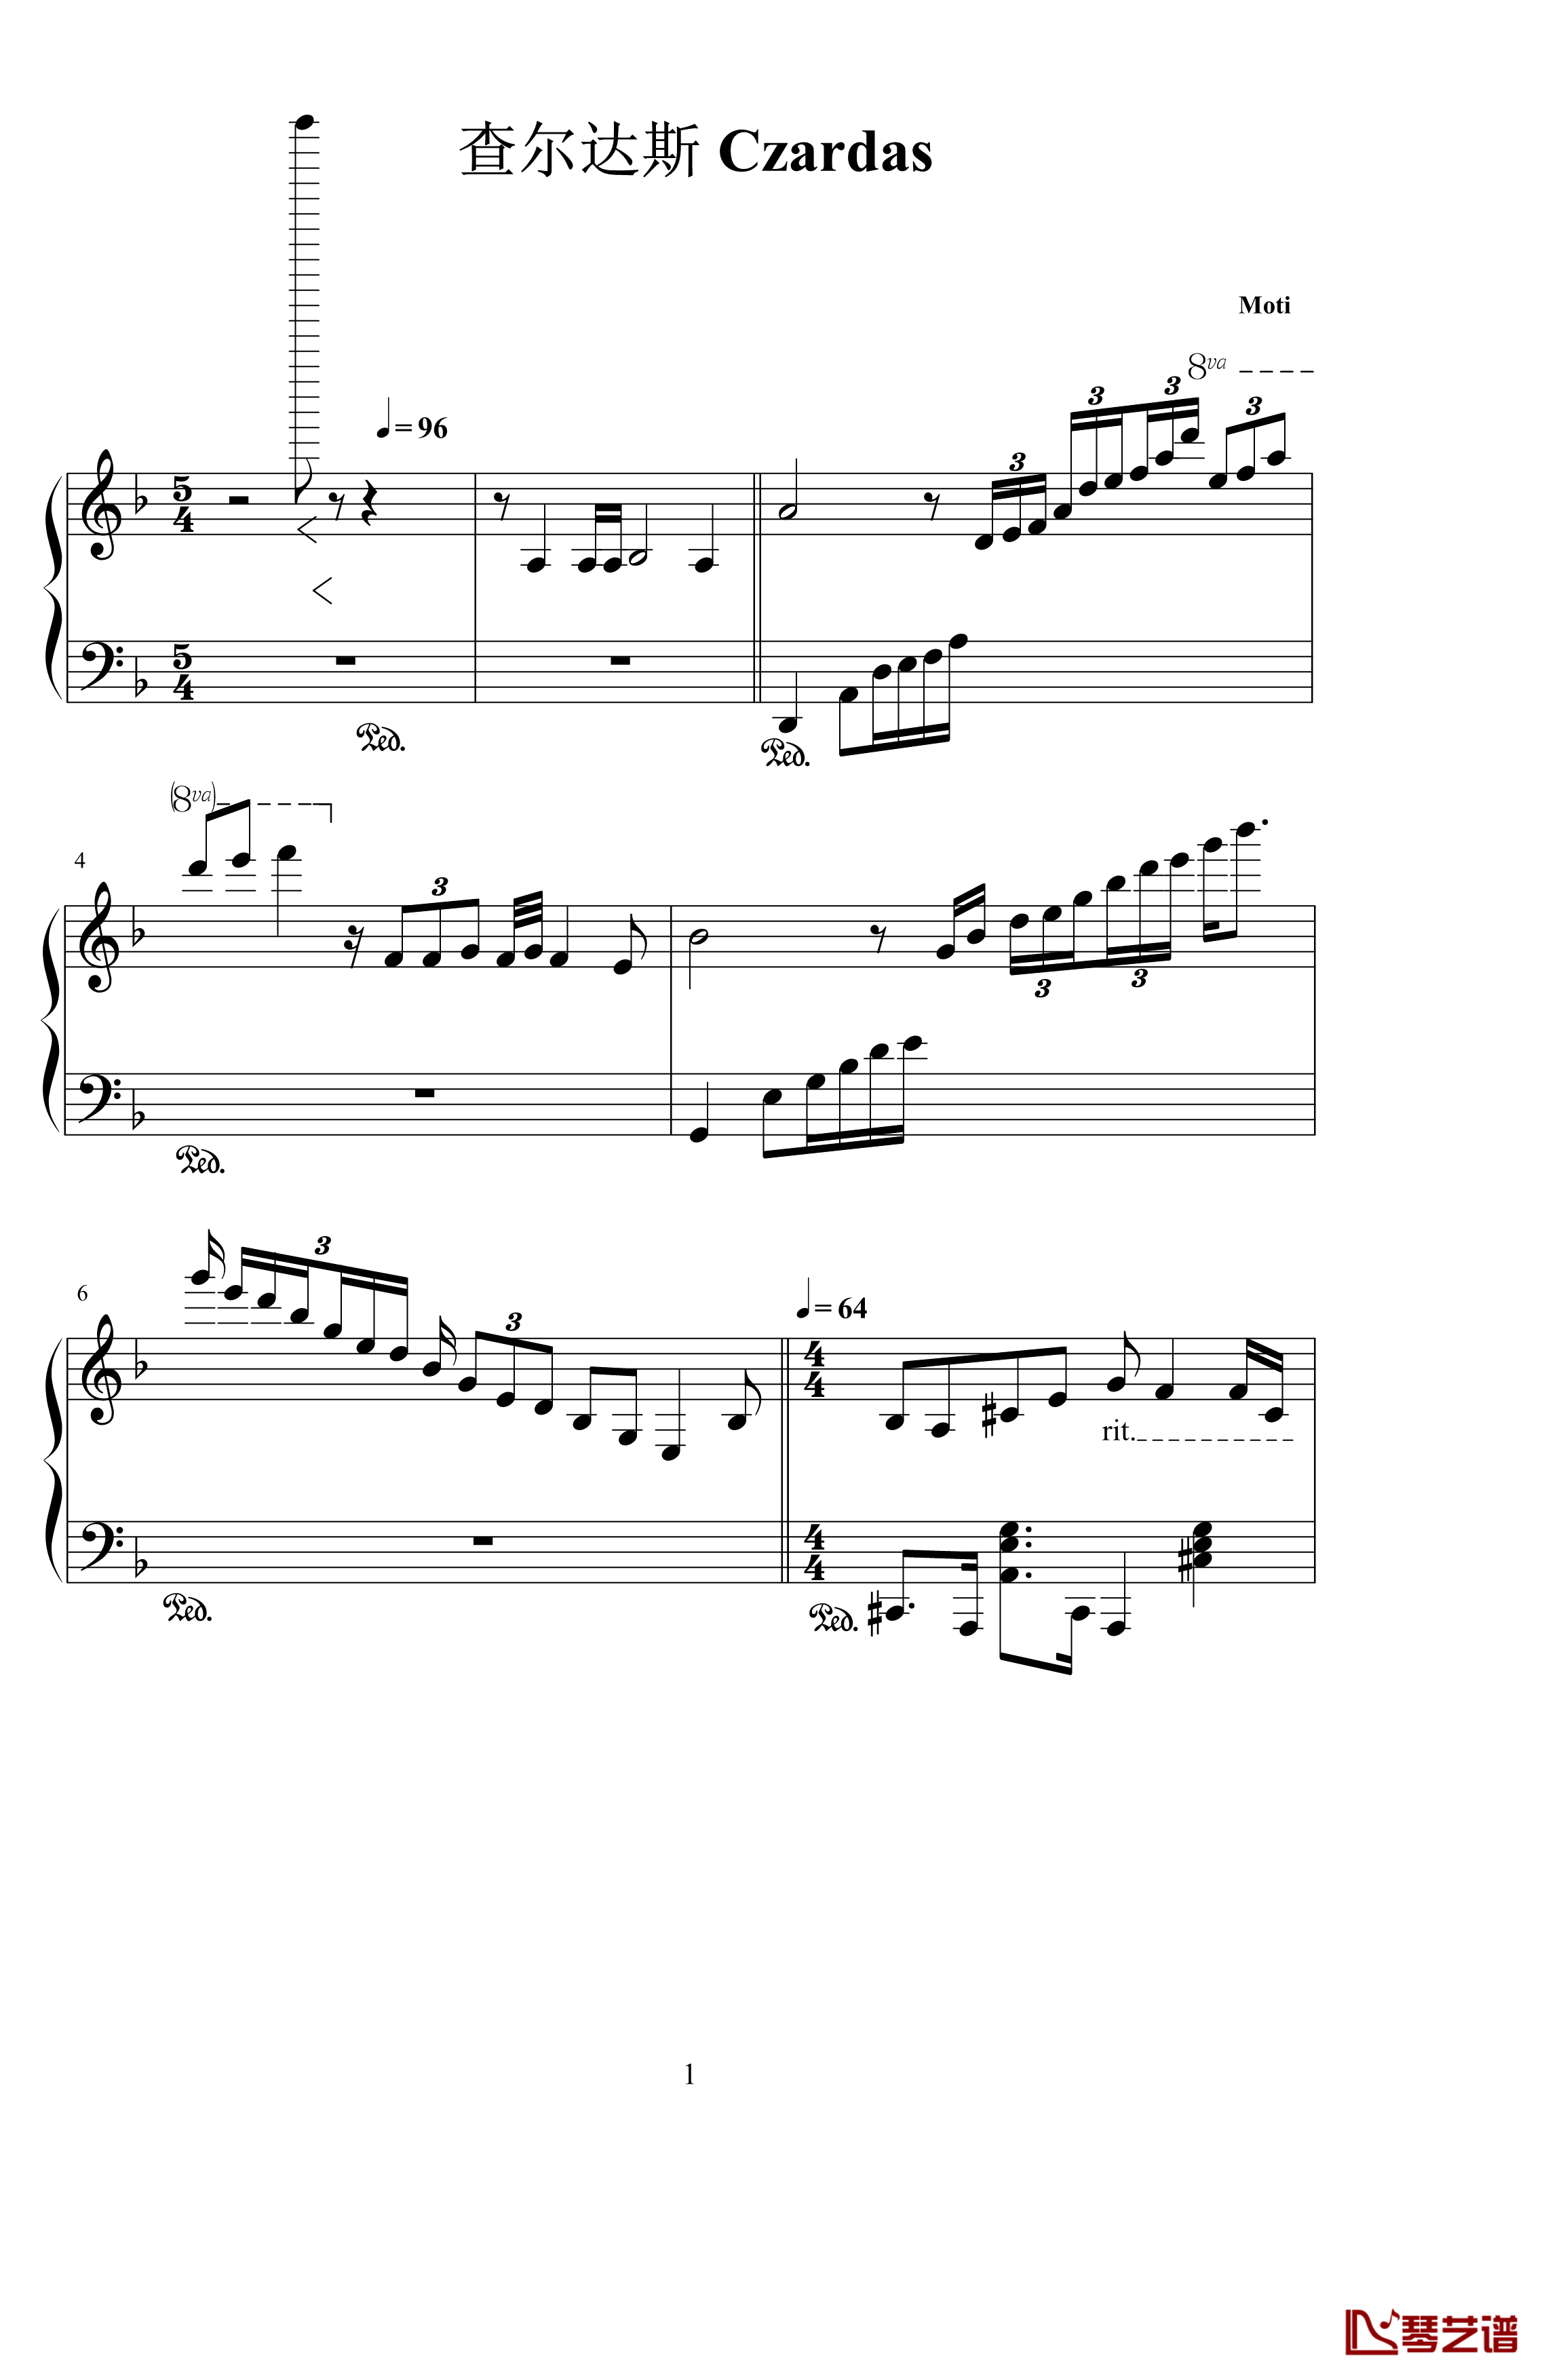 查尔达斯钢琴谱-czardas-蒙蒂1